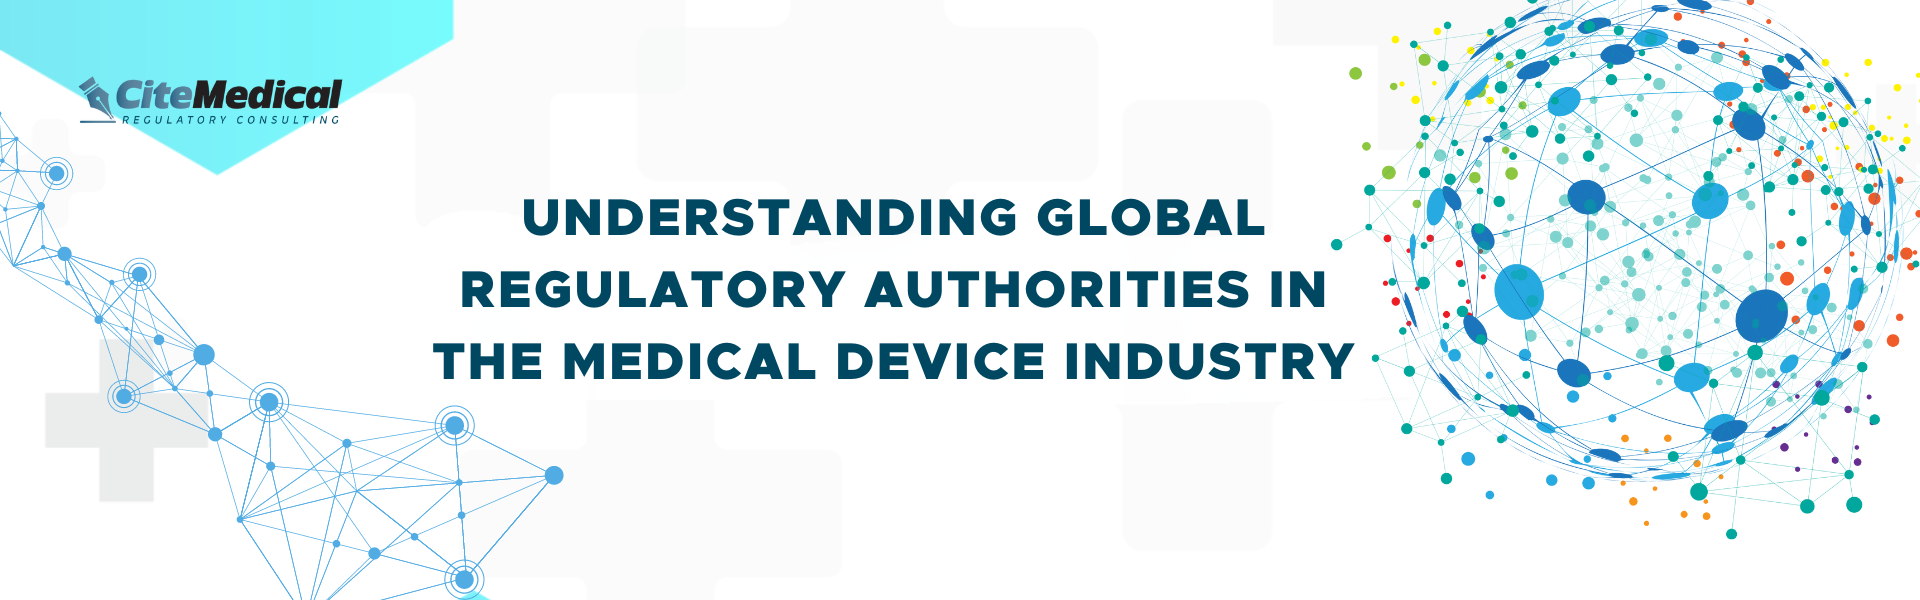 Understanding Global Regulatory Authorities in the Medical Device Industry